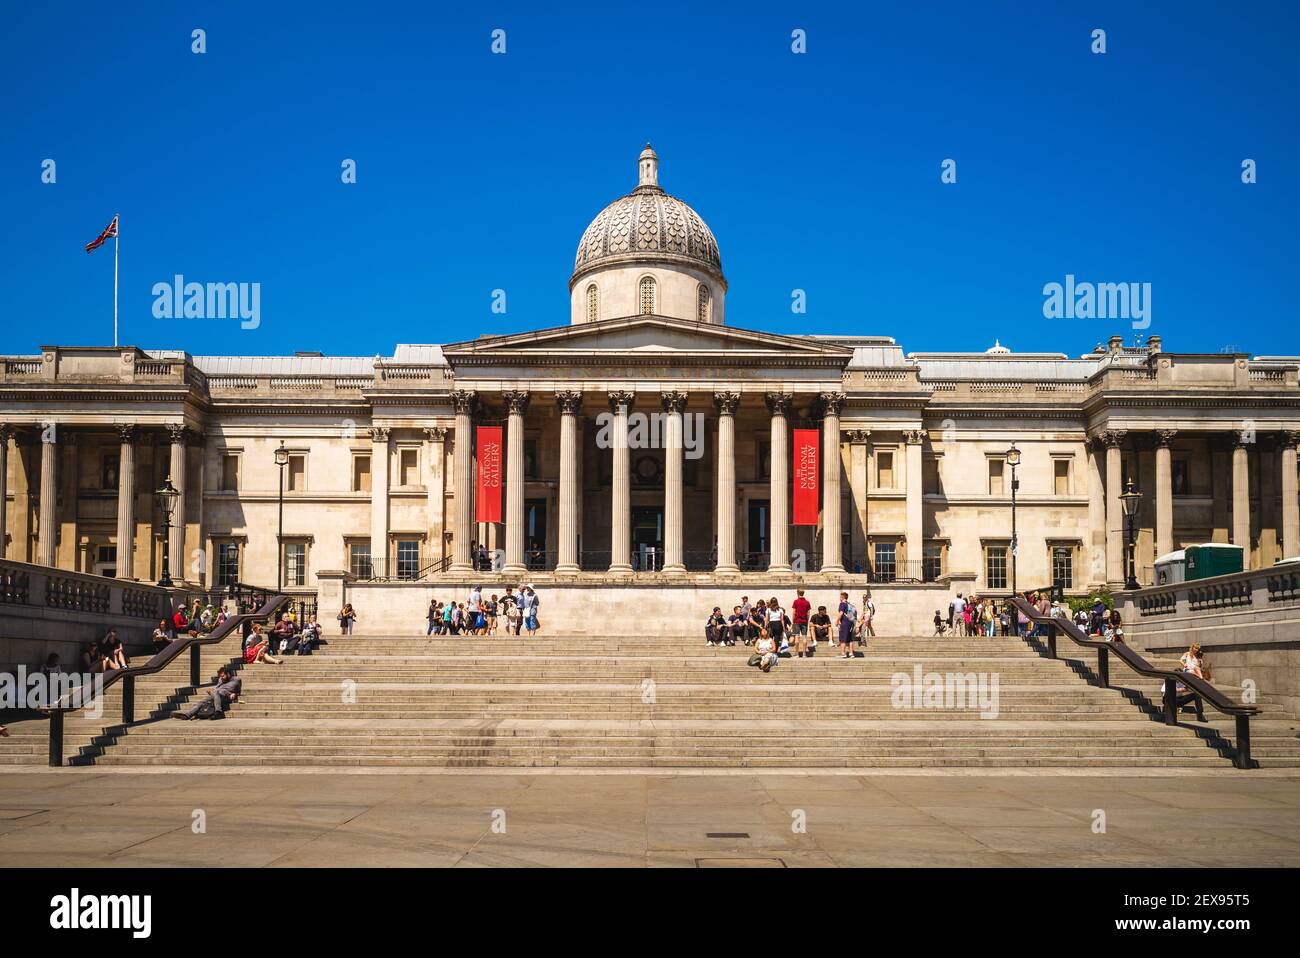 29 giugno 2018: National Gallery, un museo d'arte fondato nel 1824 e situato in Trafalgar Square nella città di Westminster, Londra, Regno Unito. Questo edificio w Foto Stock